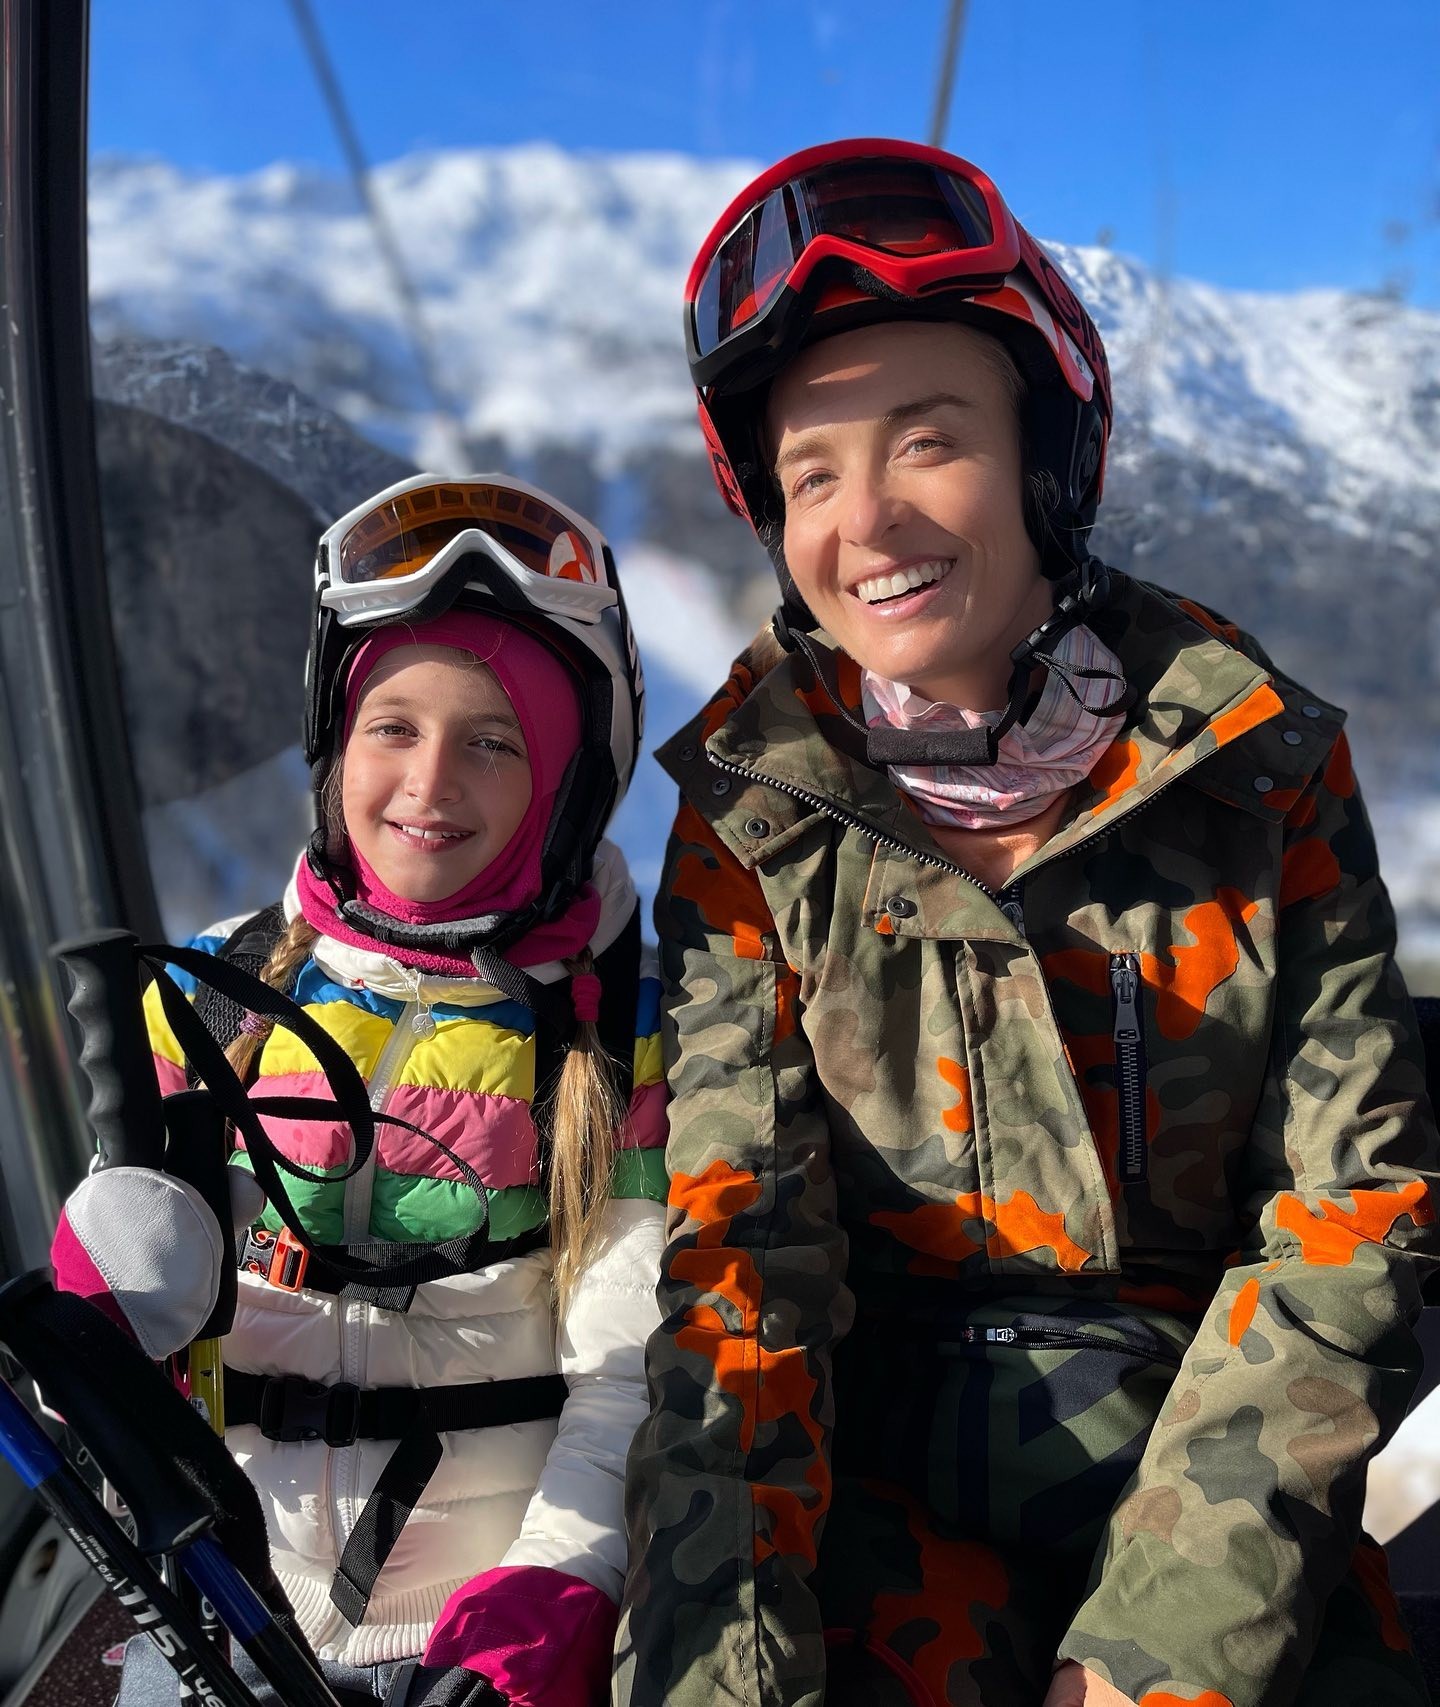  Angélica curte o dia esquiando ao lado da filha (Foto: Reprodução/ Instagram)